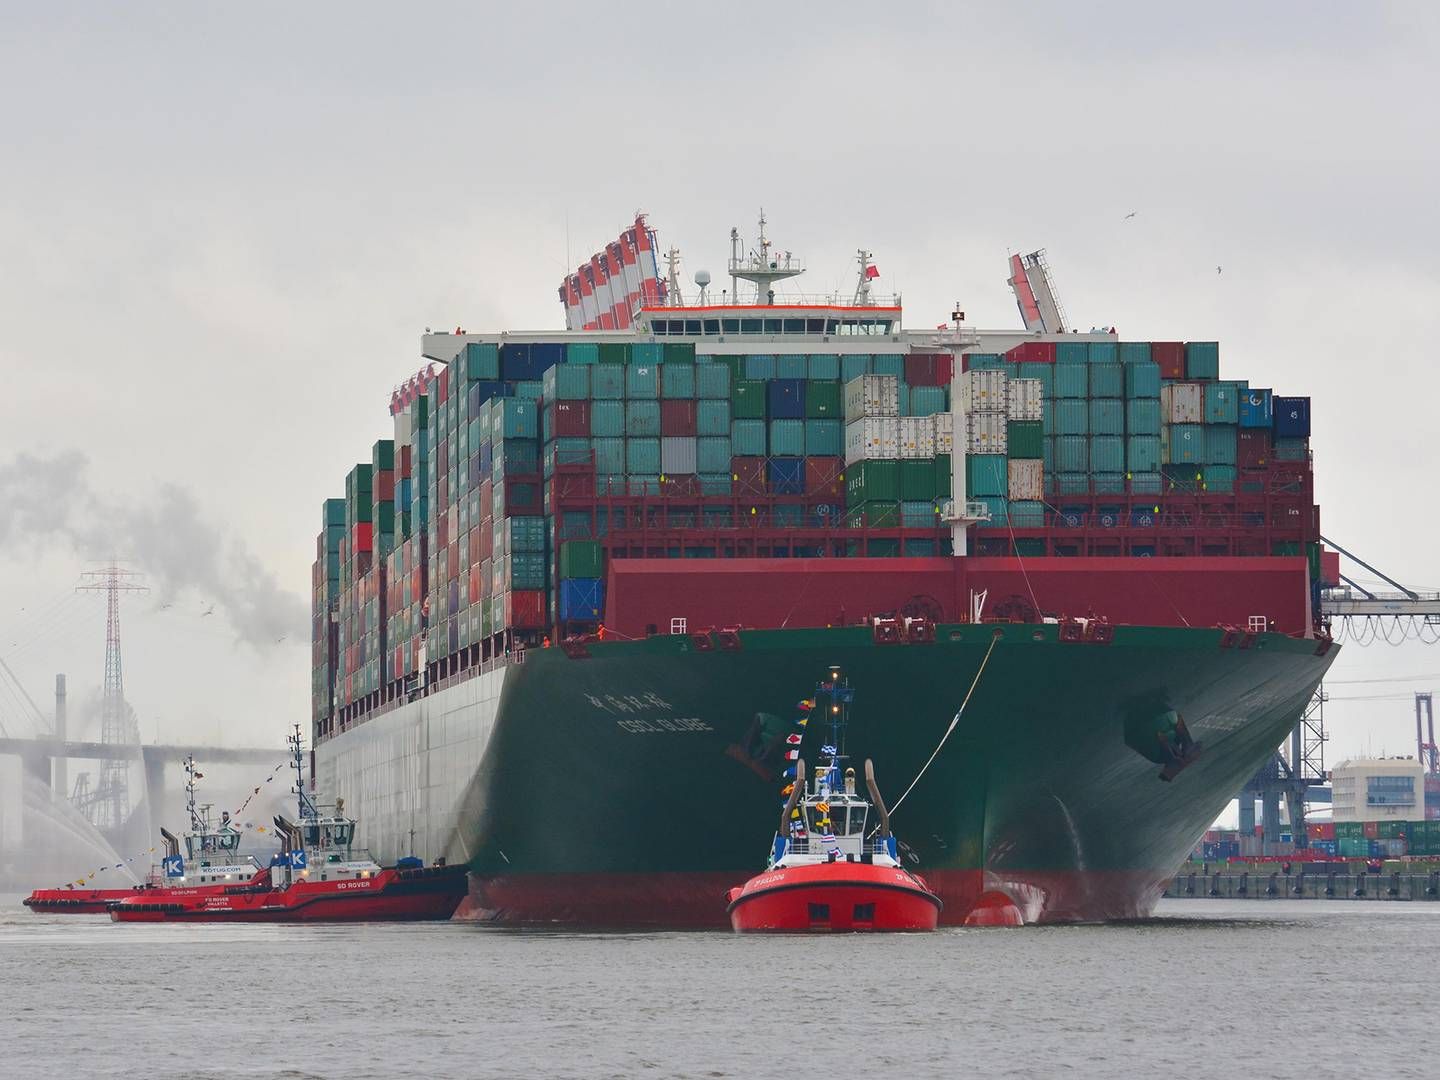 Foto: Pr / Port of Hamburg